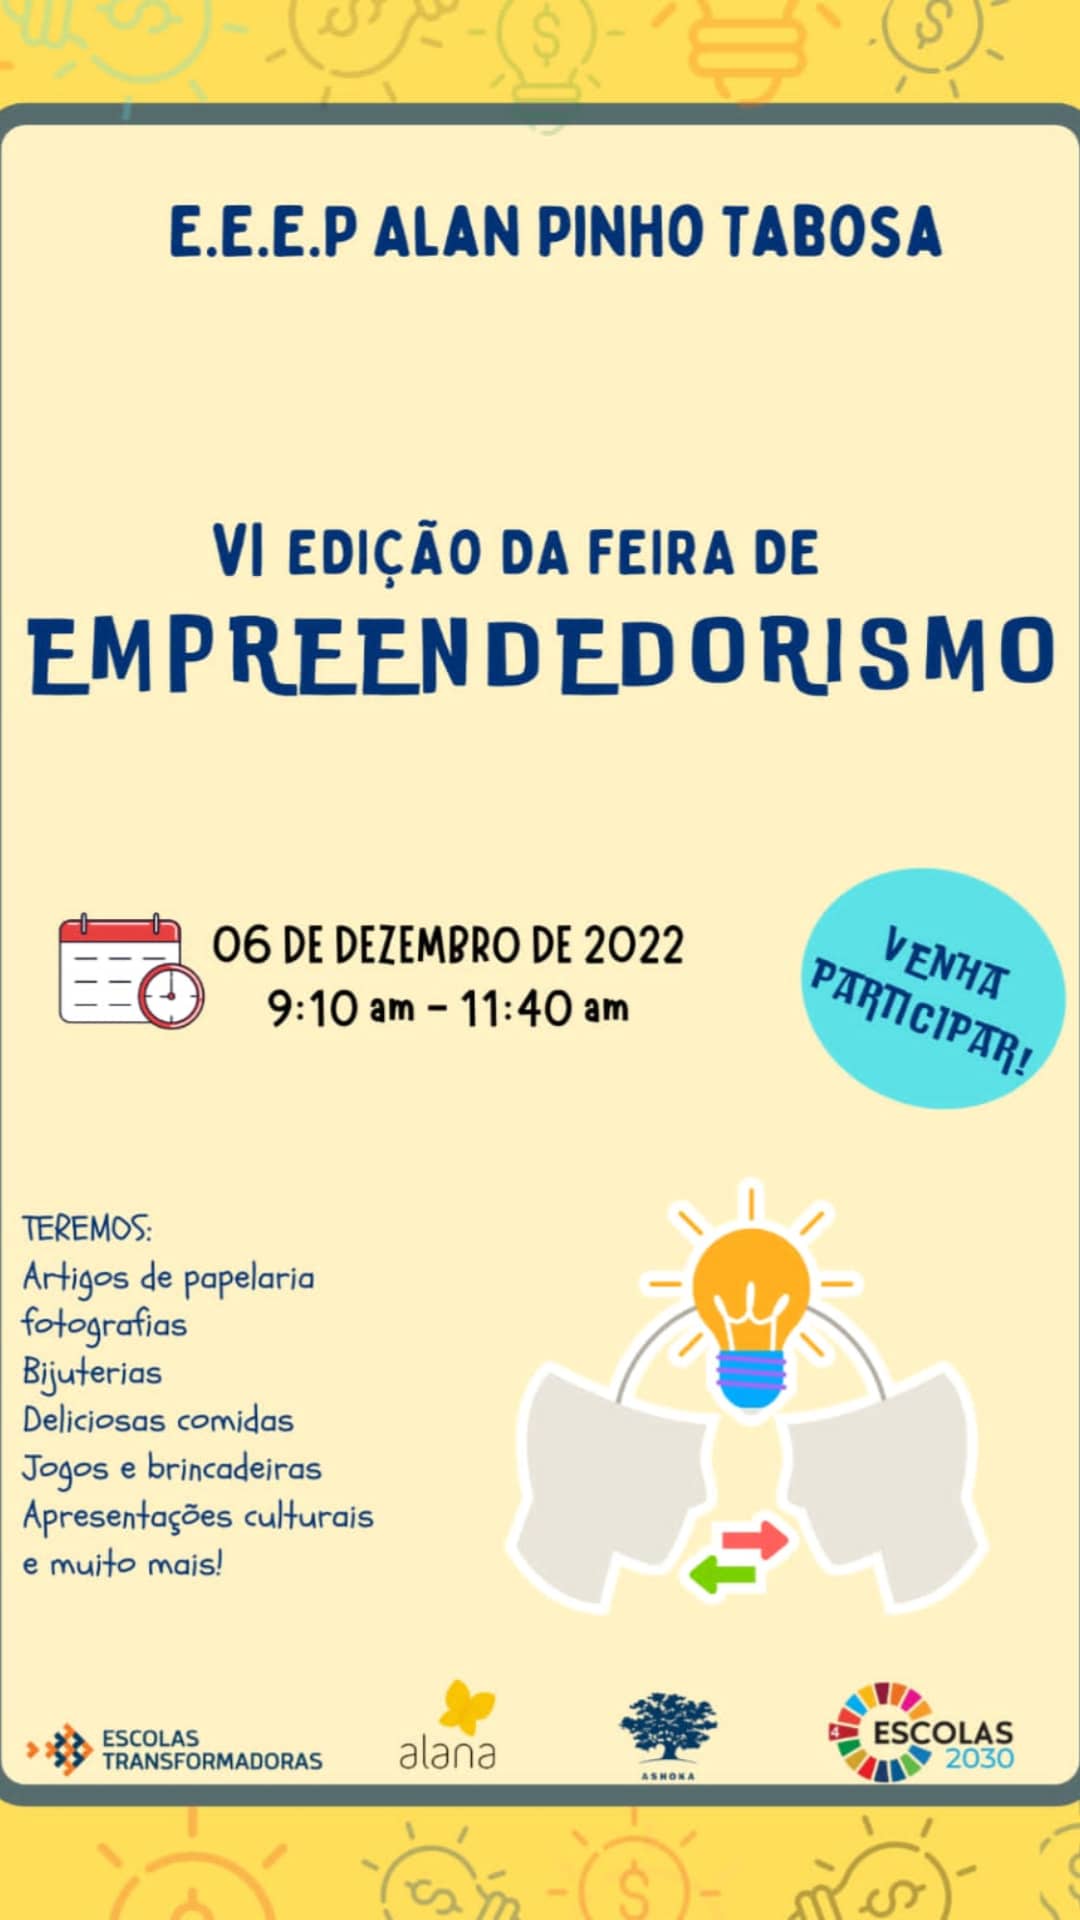 VI Edição da Feira de Empreendedorismo da EEEP Alan Pinho Tabosa